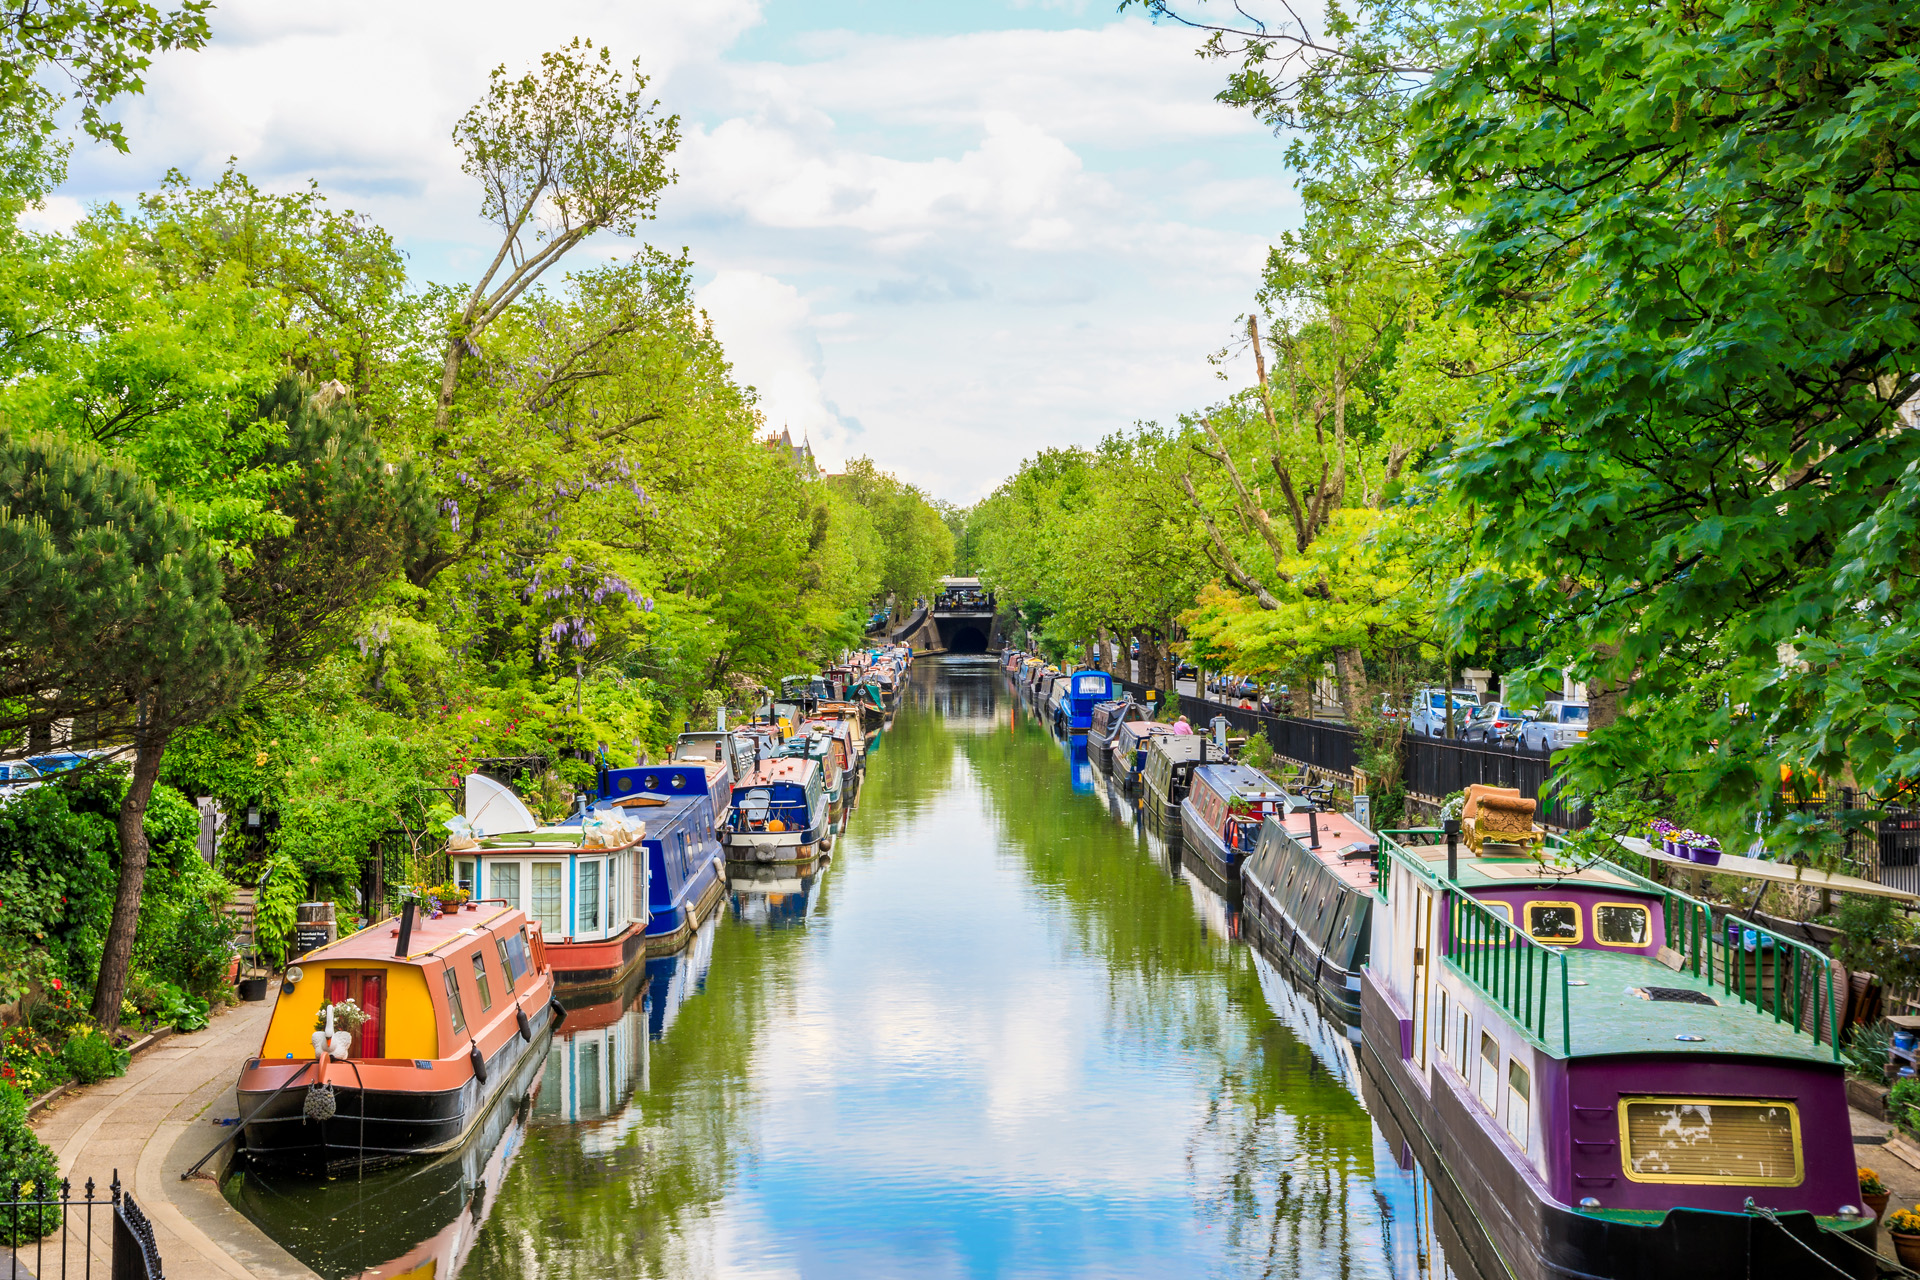 Regent's canal, Little Venice in London, UK